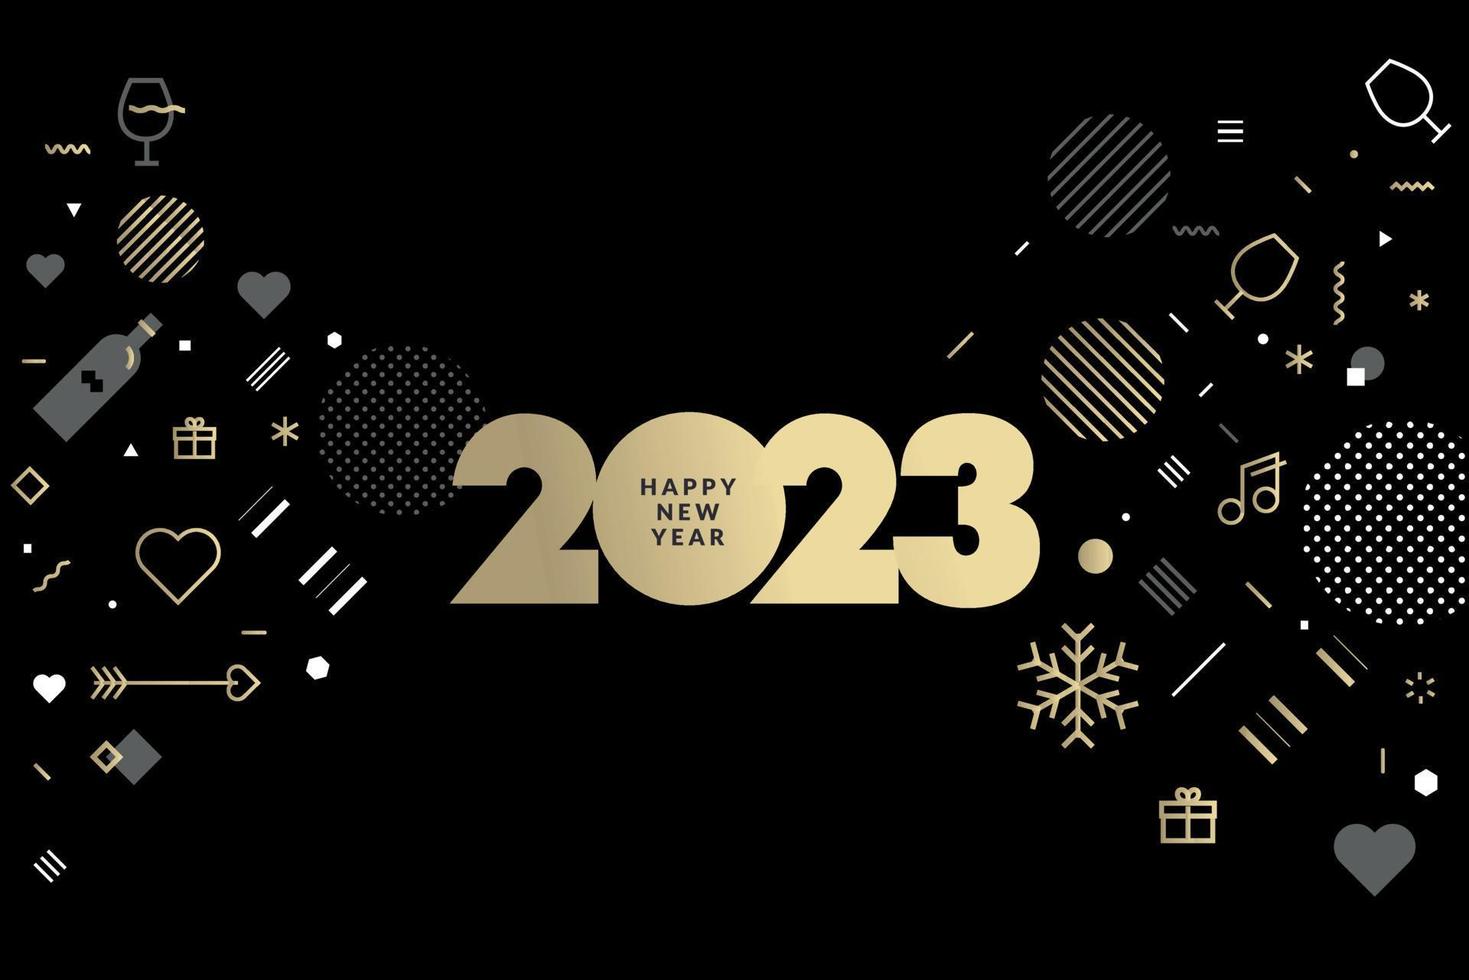 cartão de felicitações de ano novo de 2023. conceito de ilustração vetorial para plano de fundo, cartão de felicitações, cartão de convite de festa, banner de site, banner de mídia social, material de marketing. vetor